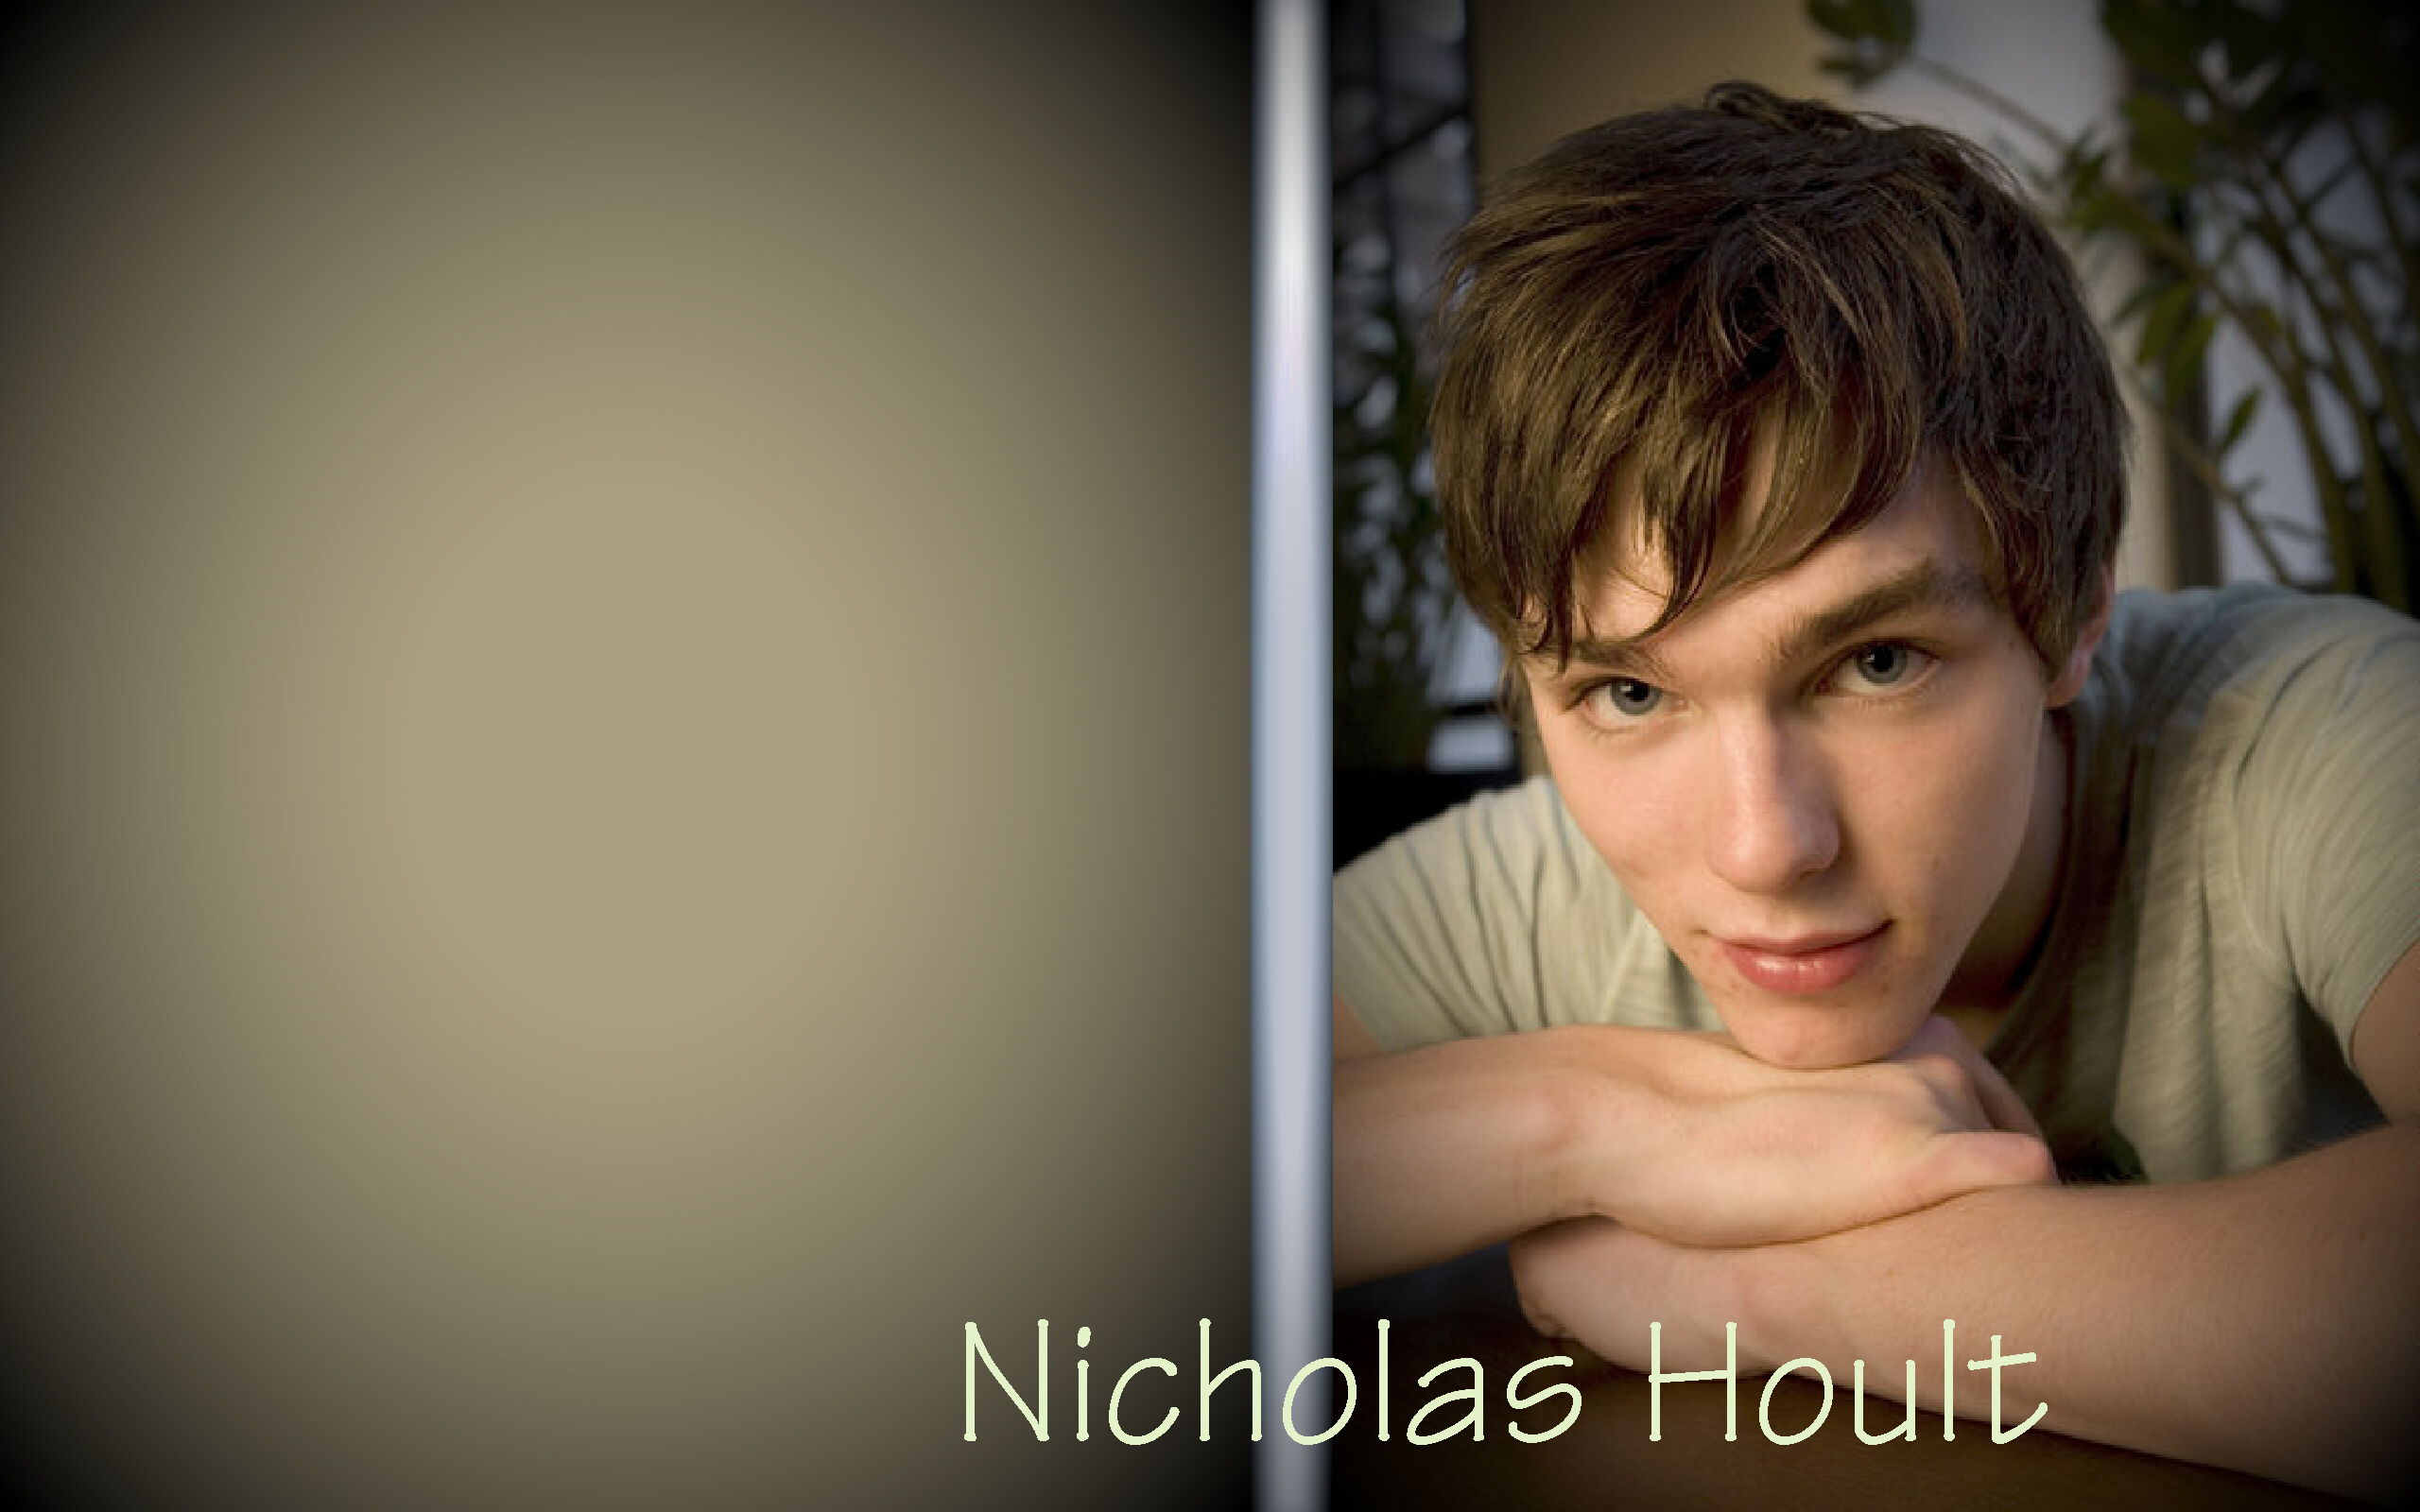 Nicholas Hoult in Fan Creations